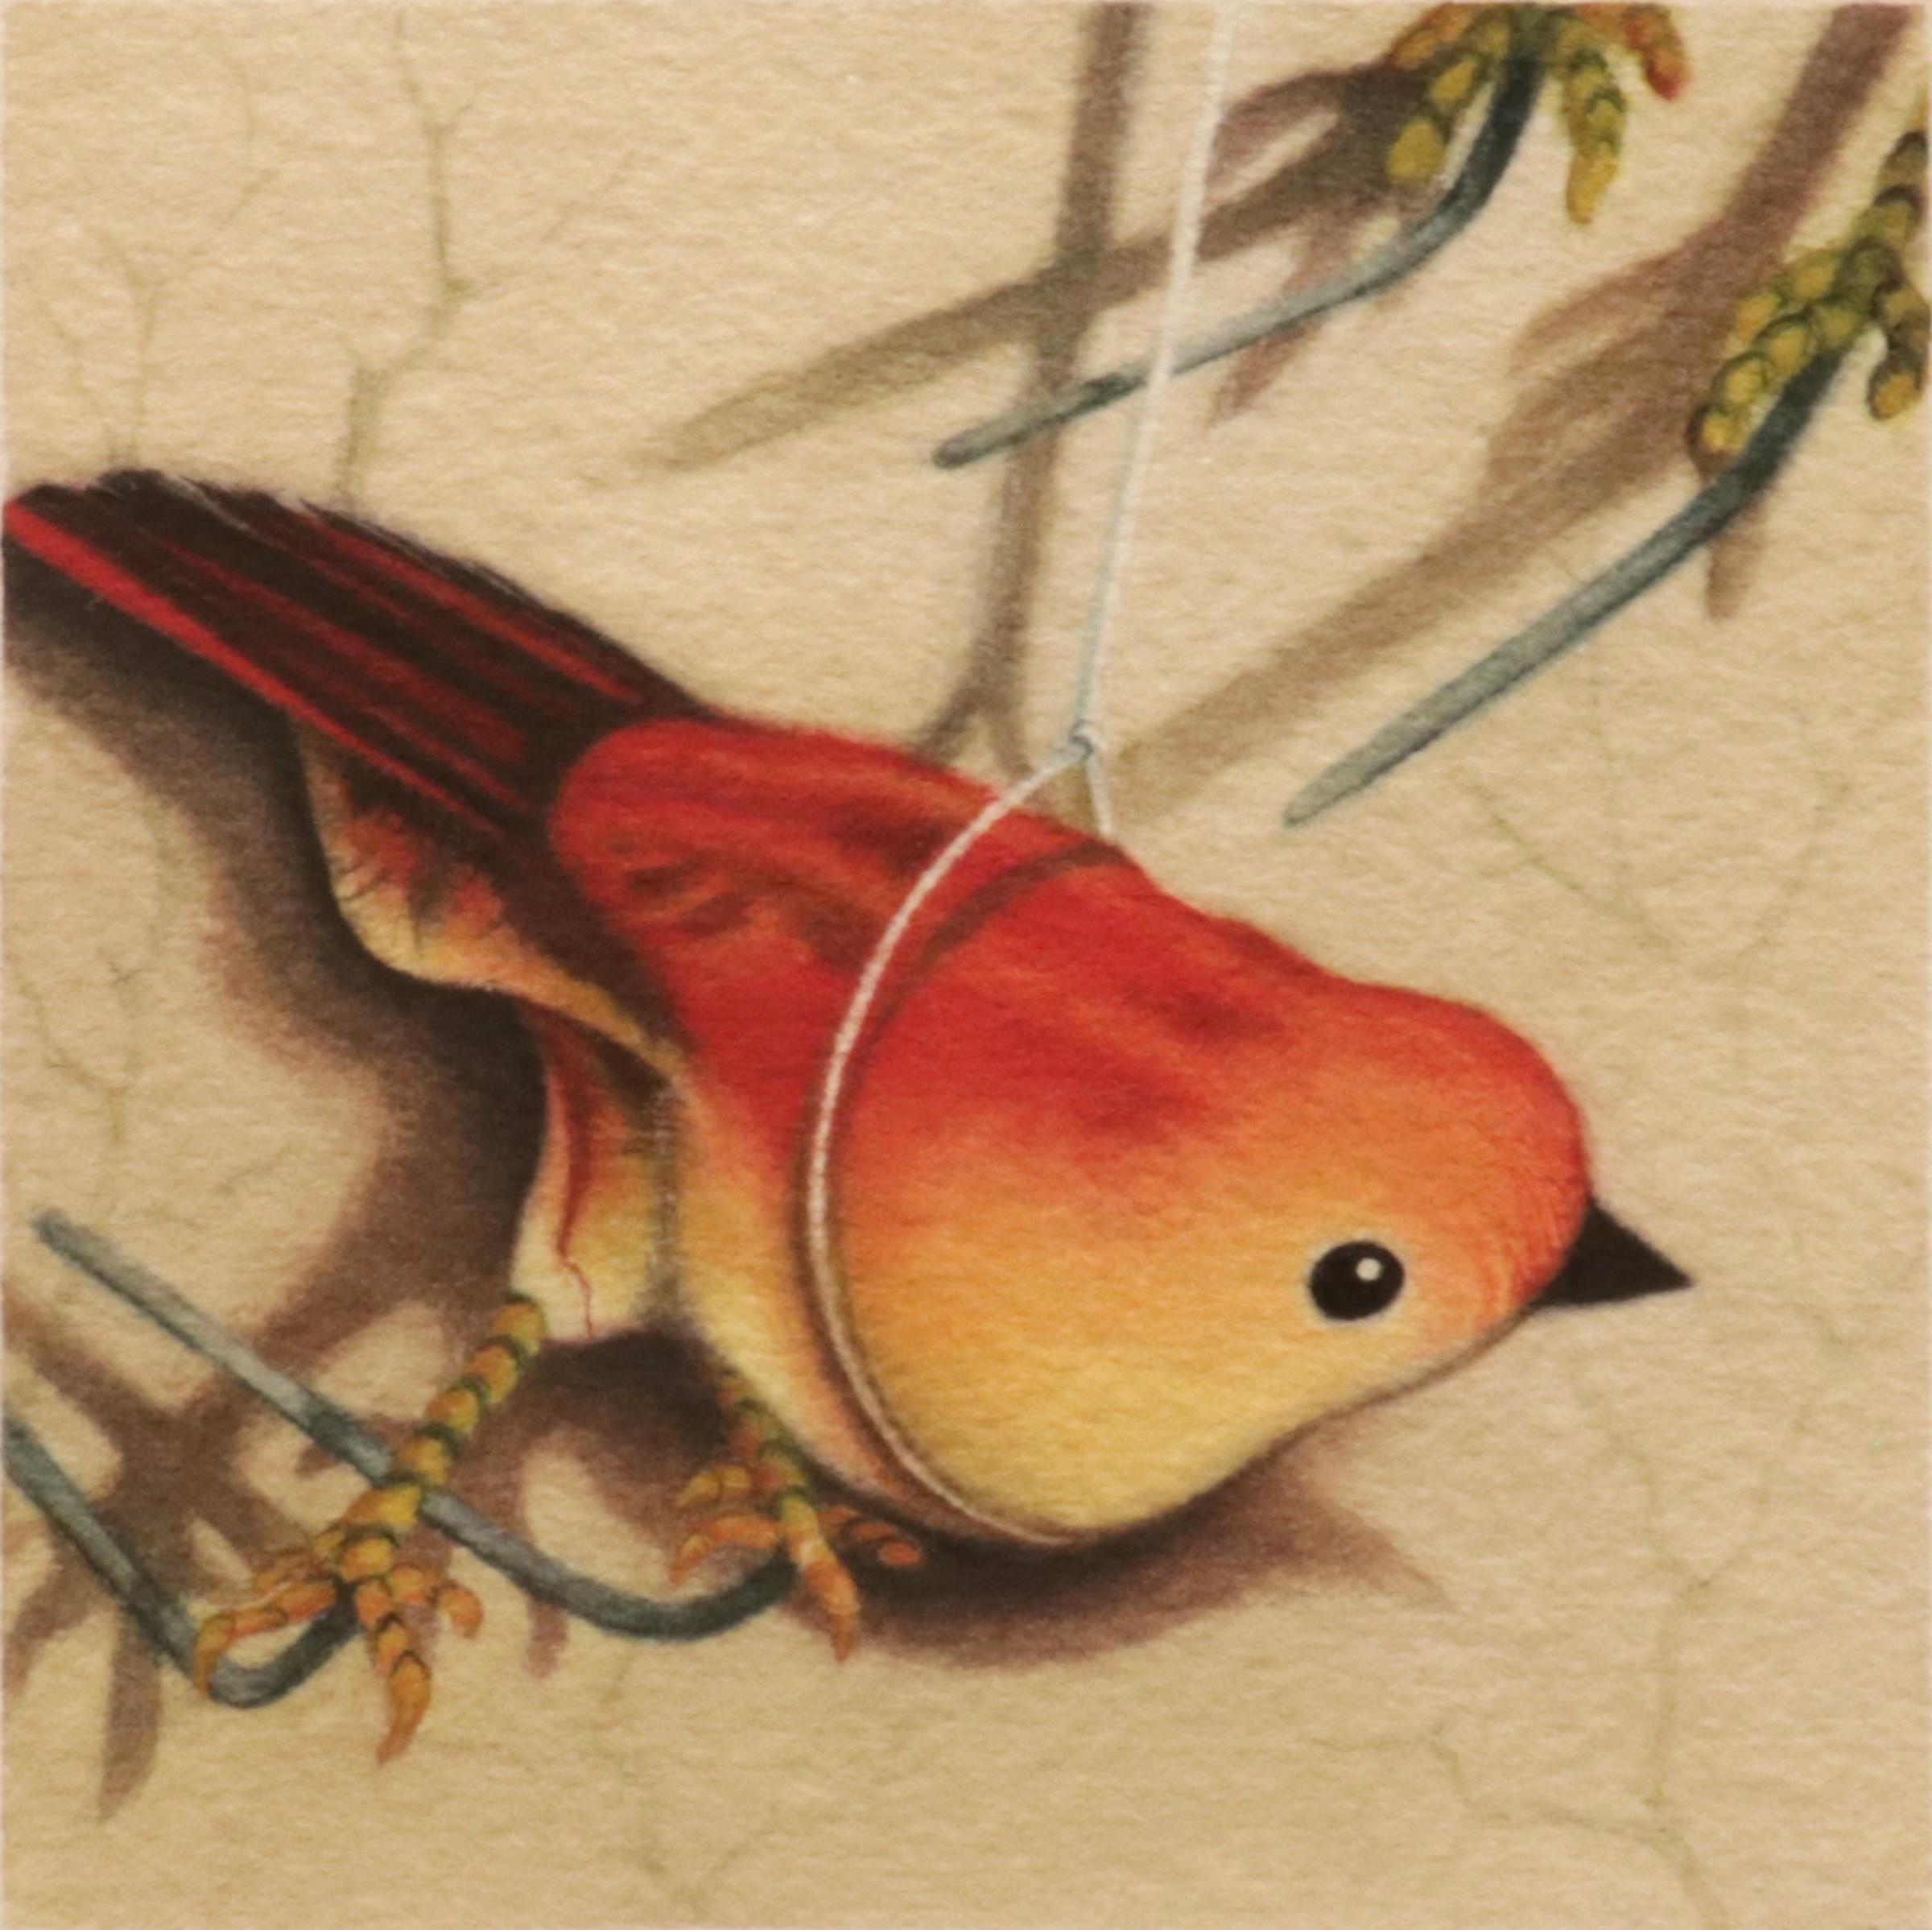 LONE BIRD #4 - Zeitgenössischer Realismus / Aquarell / Orangefarbener Spielzeugvogel